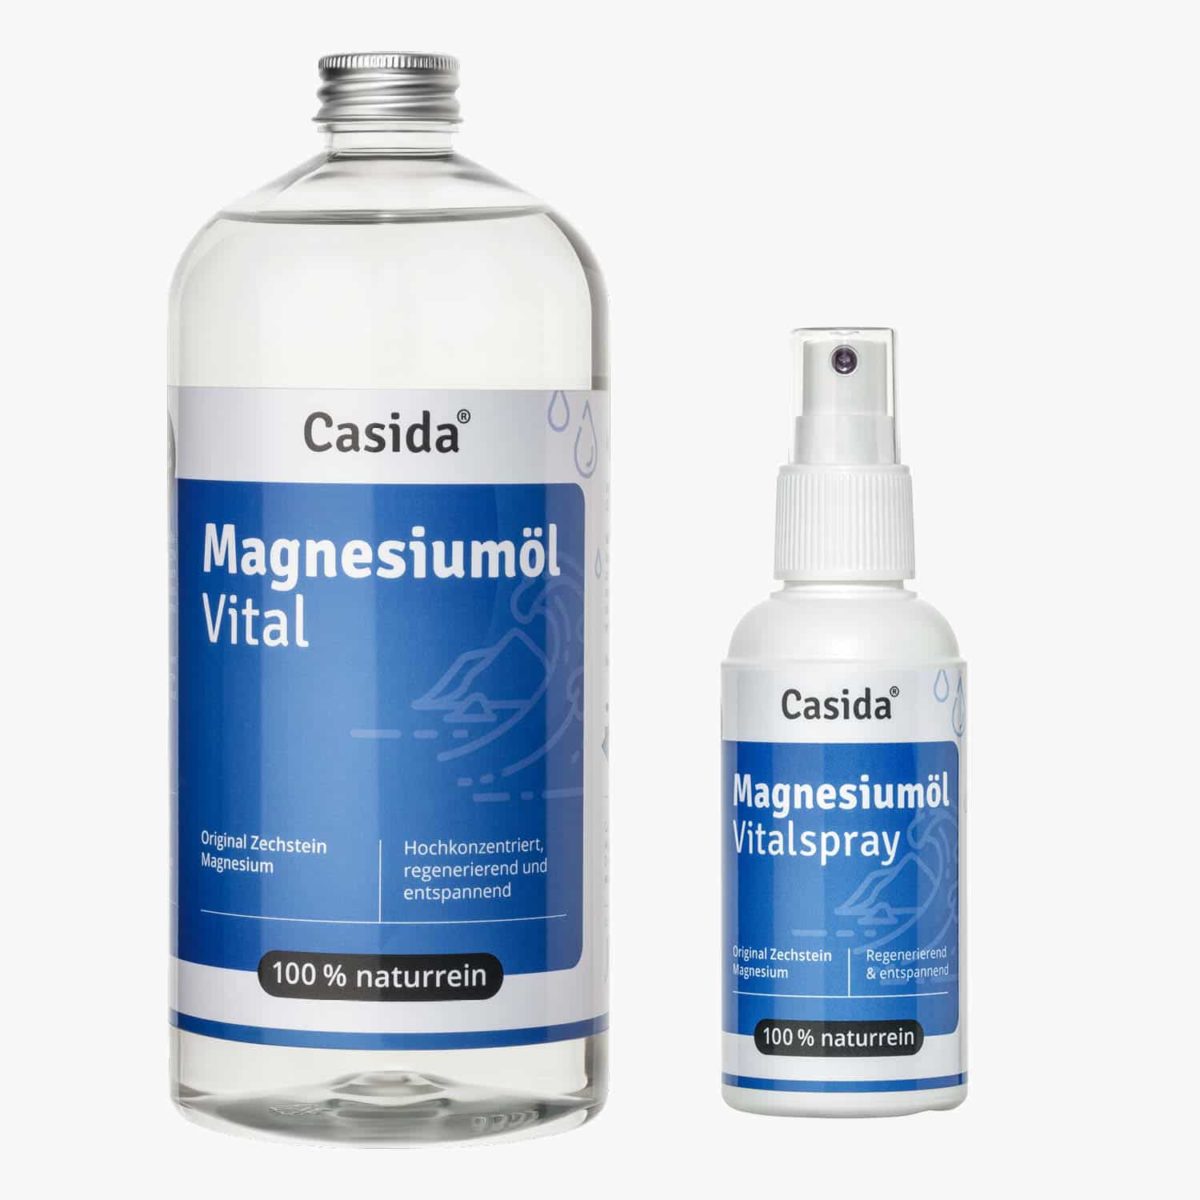 Casida Set Casida Magnesium Oil Vital Zechstein 1000 ml 11730233 PZN 10086741 Apotheke Vorteilsset Rabatt Bundle Regeneration Muskeln Sport Verspannung